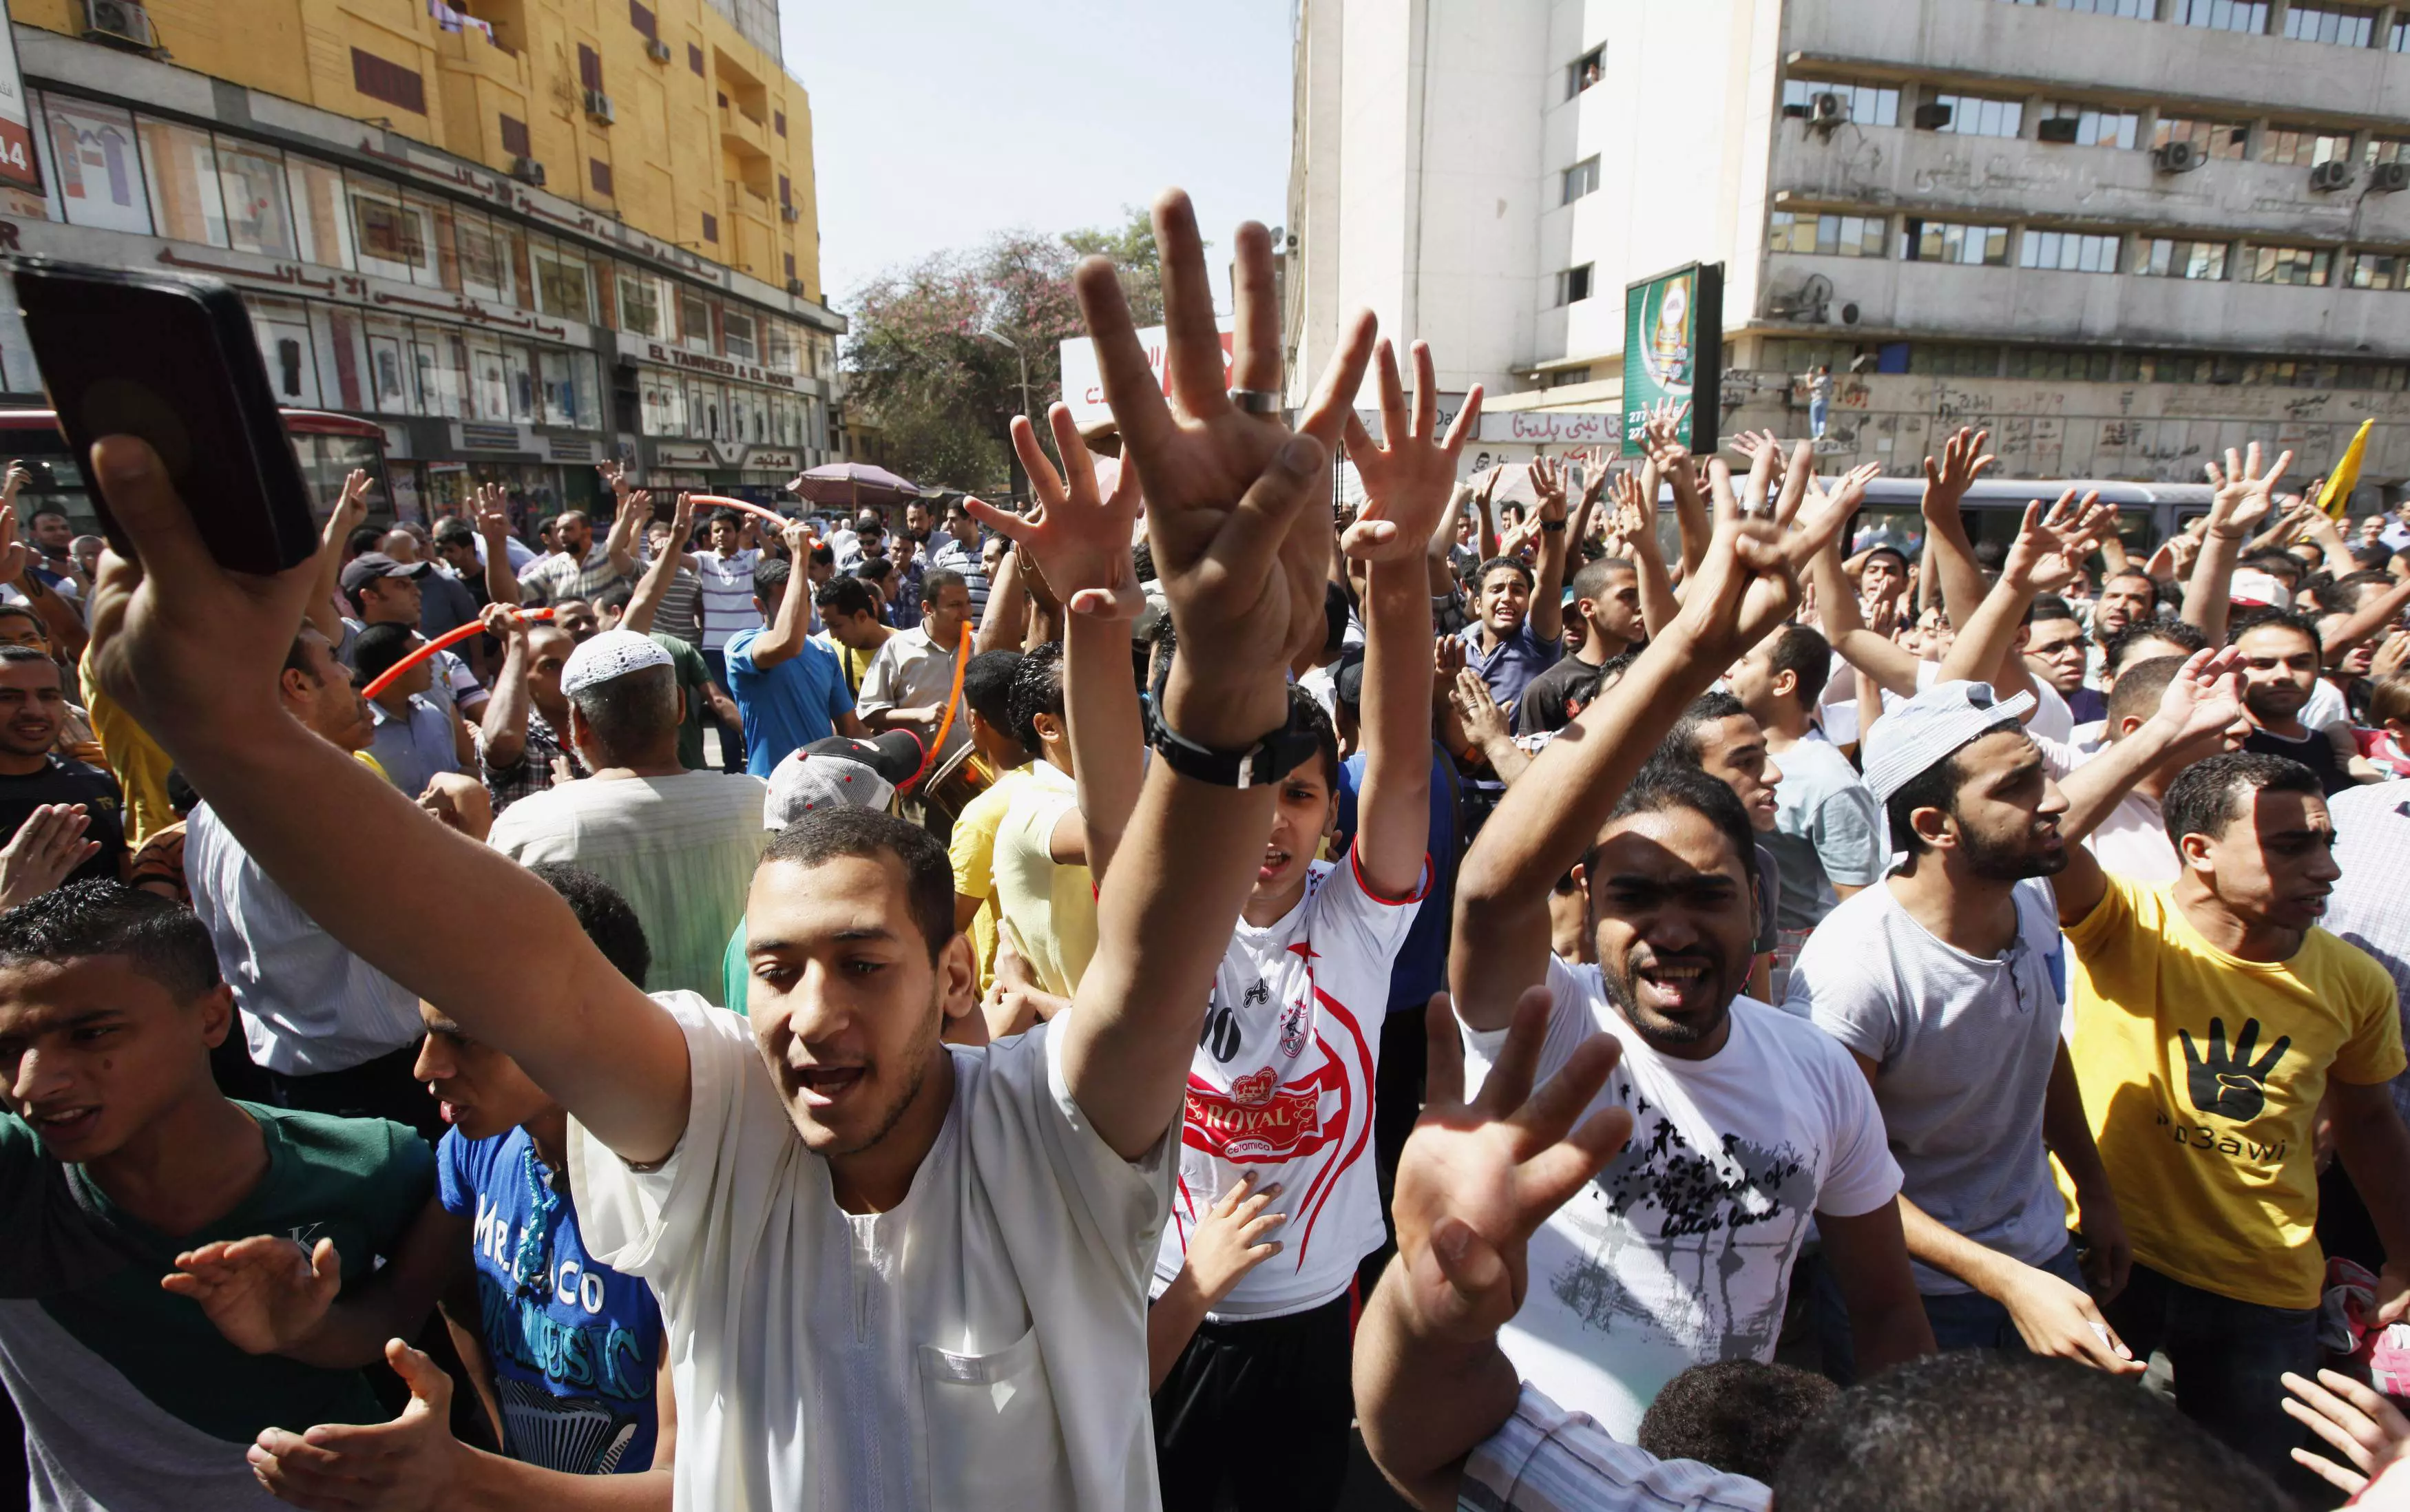 "ינסו להראות שהצבא רק של אלו שתמכו בהפיכה". מפגינים בכיכר תחריר